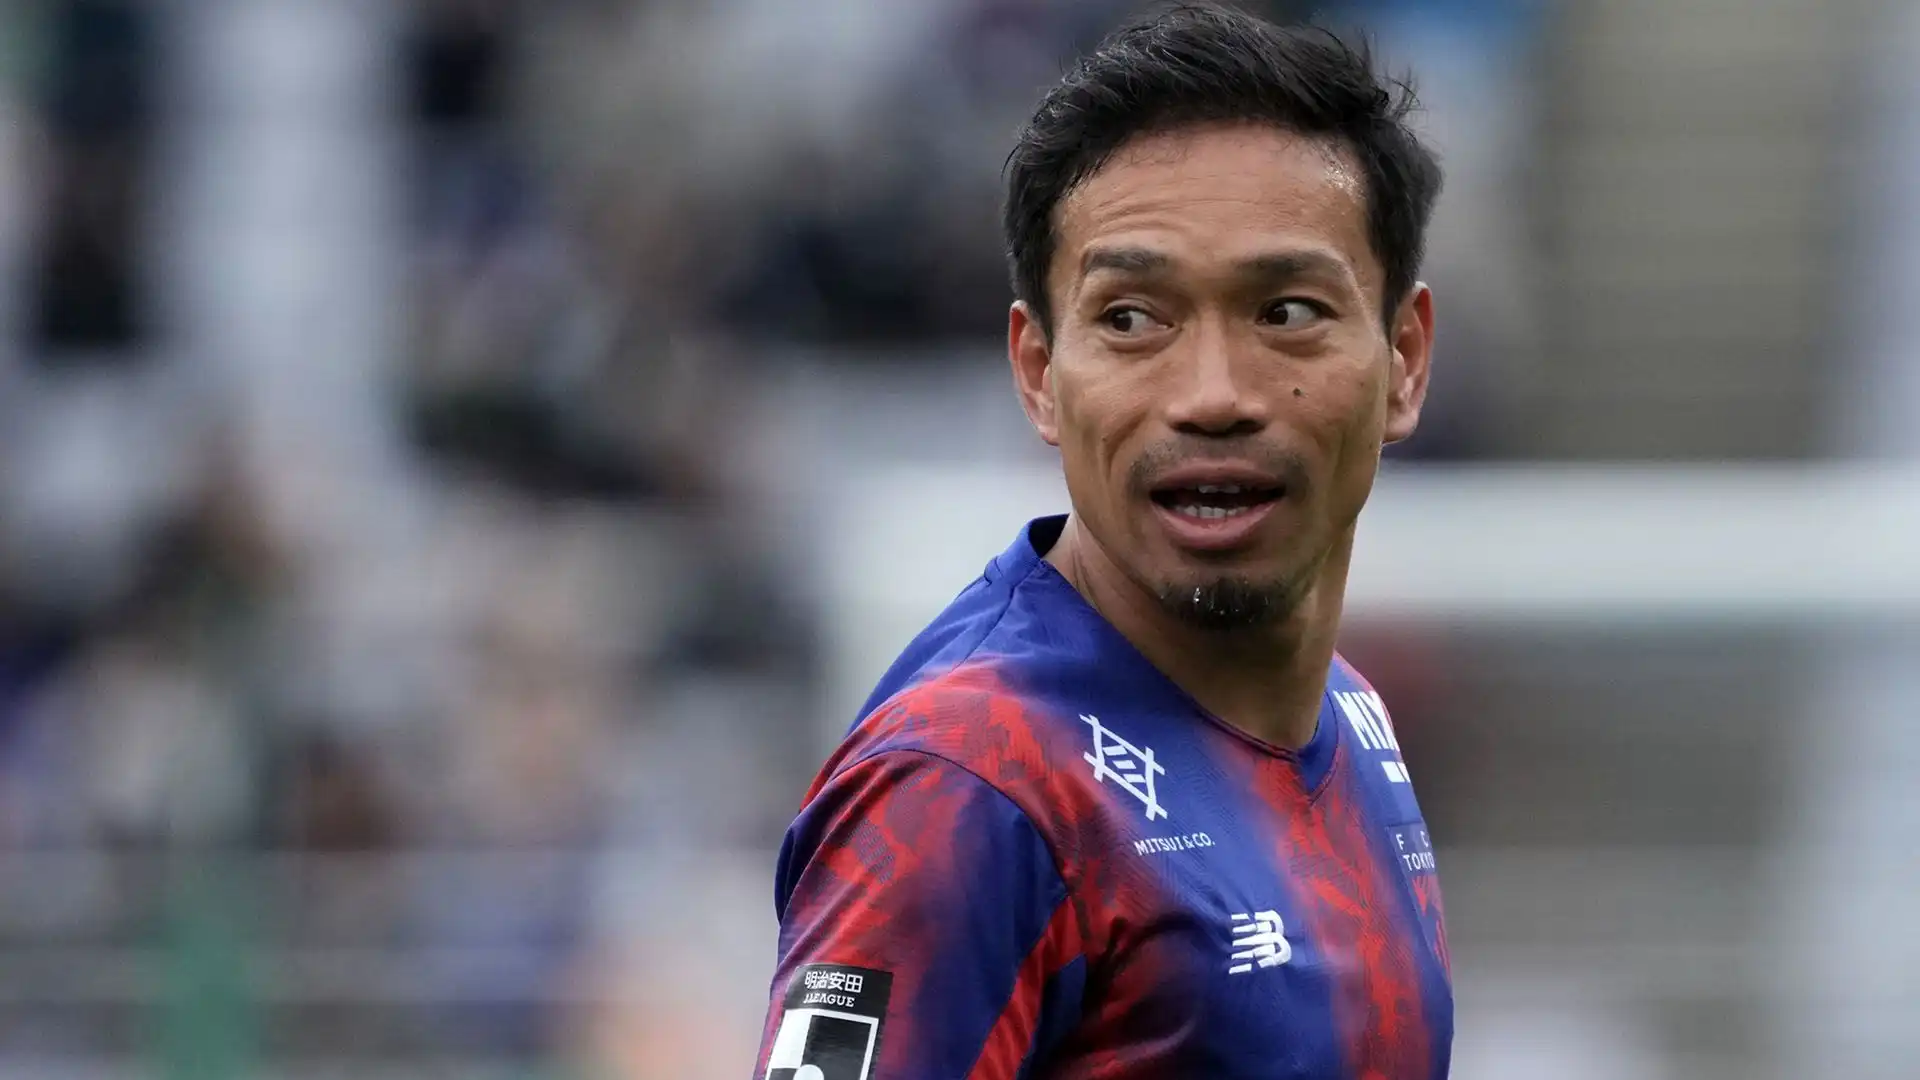 Yuto Nagatomo (Difensore): patrimonio netto stimato di 5 milioni di dollari. Per 7 anni difensore dell'Inter, conta 142 presenze con la Nazionale giapponese